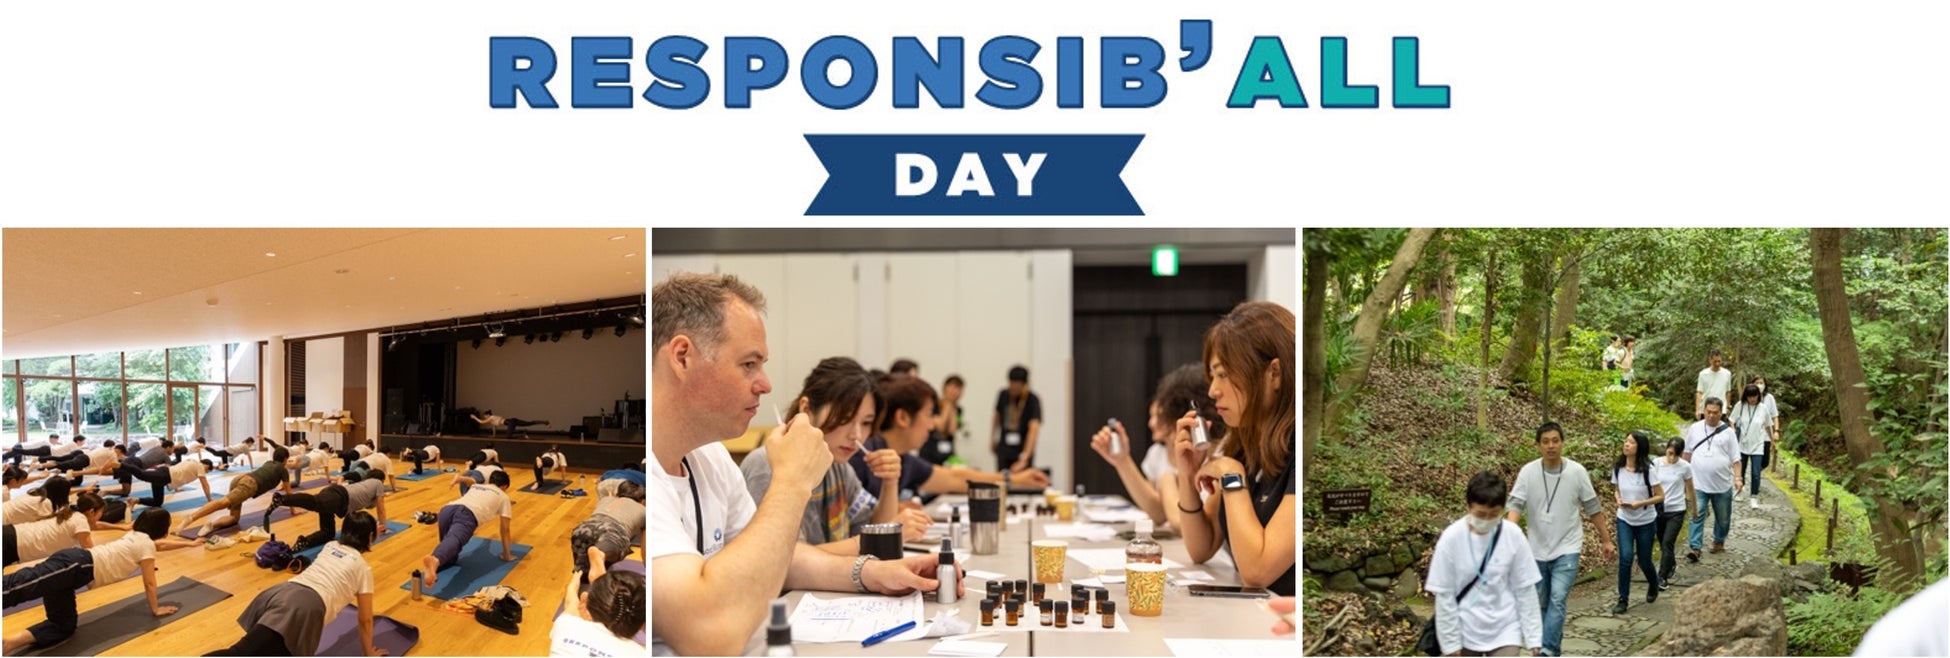 酒類メーカー、ペルノ・リカール グループの74カ国の全社員が一同に企業の社会的責任について考え、行動する「RESPONSIB’ALL DAY(レスポンシボールデイ）」を6月15日に実施